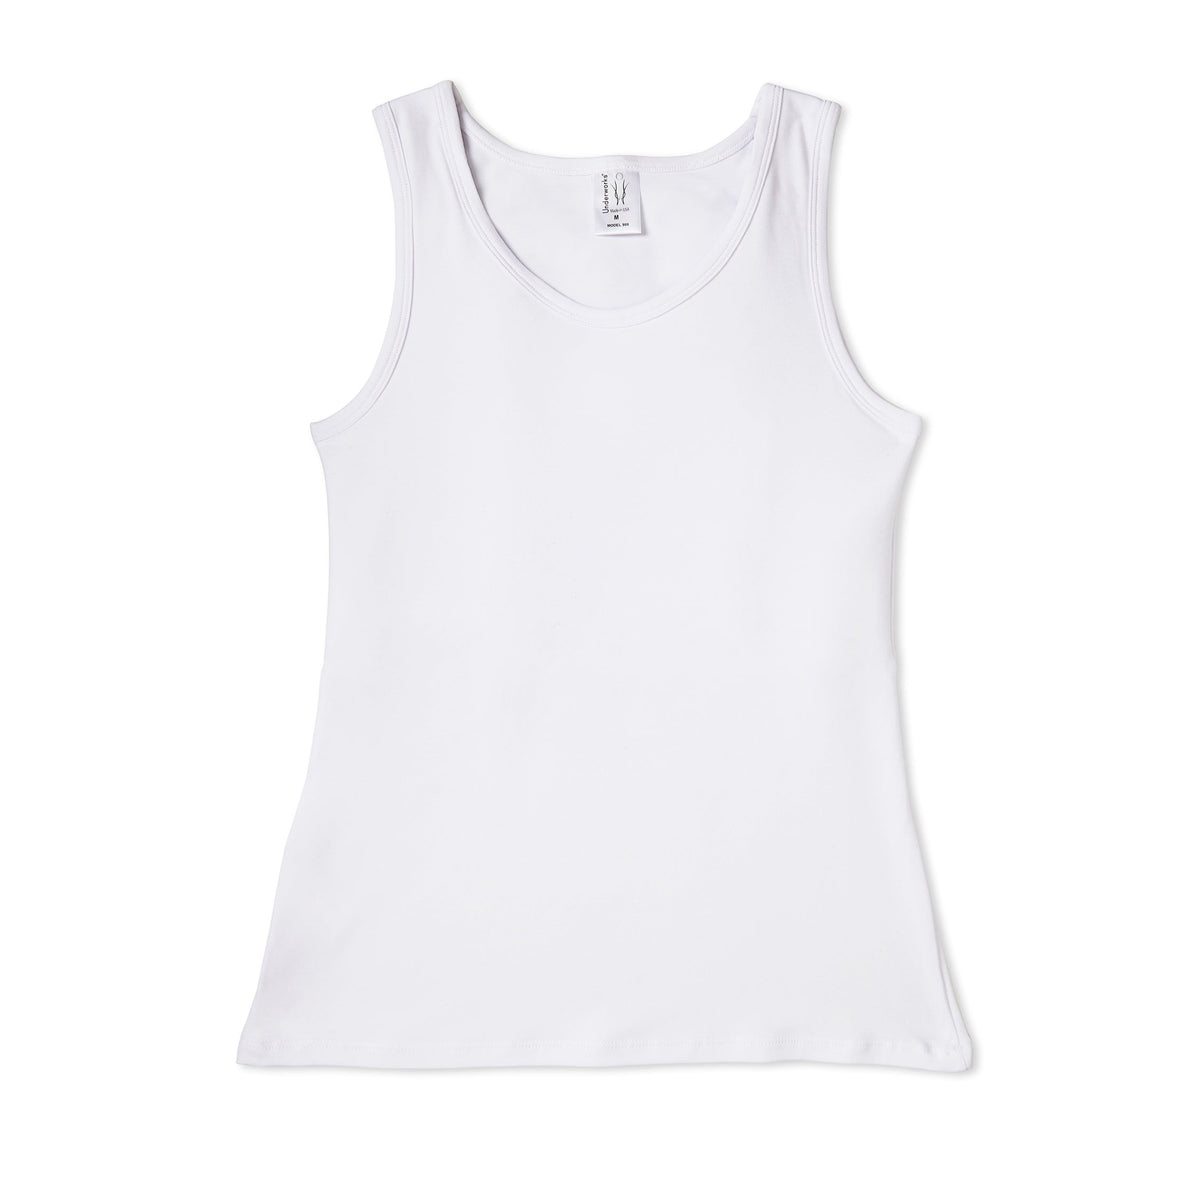 White Compression Shirt, Chest Compression Binder, Shop Underwork